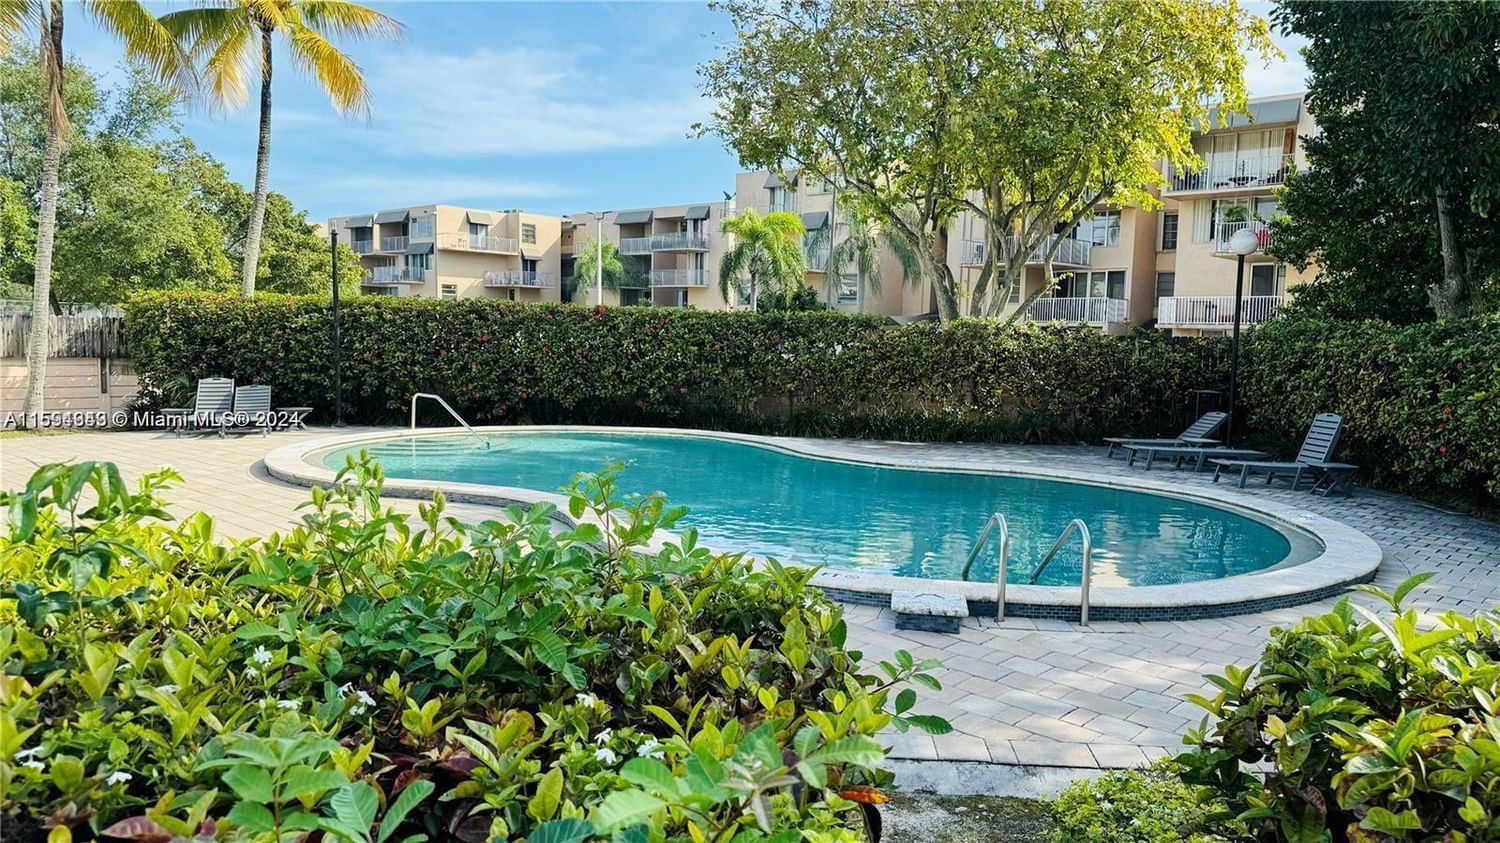 Real estate property located at 10900 104th St #310, Miami-Dade County, THE BERKELEY CONDO, Miami, FL